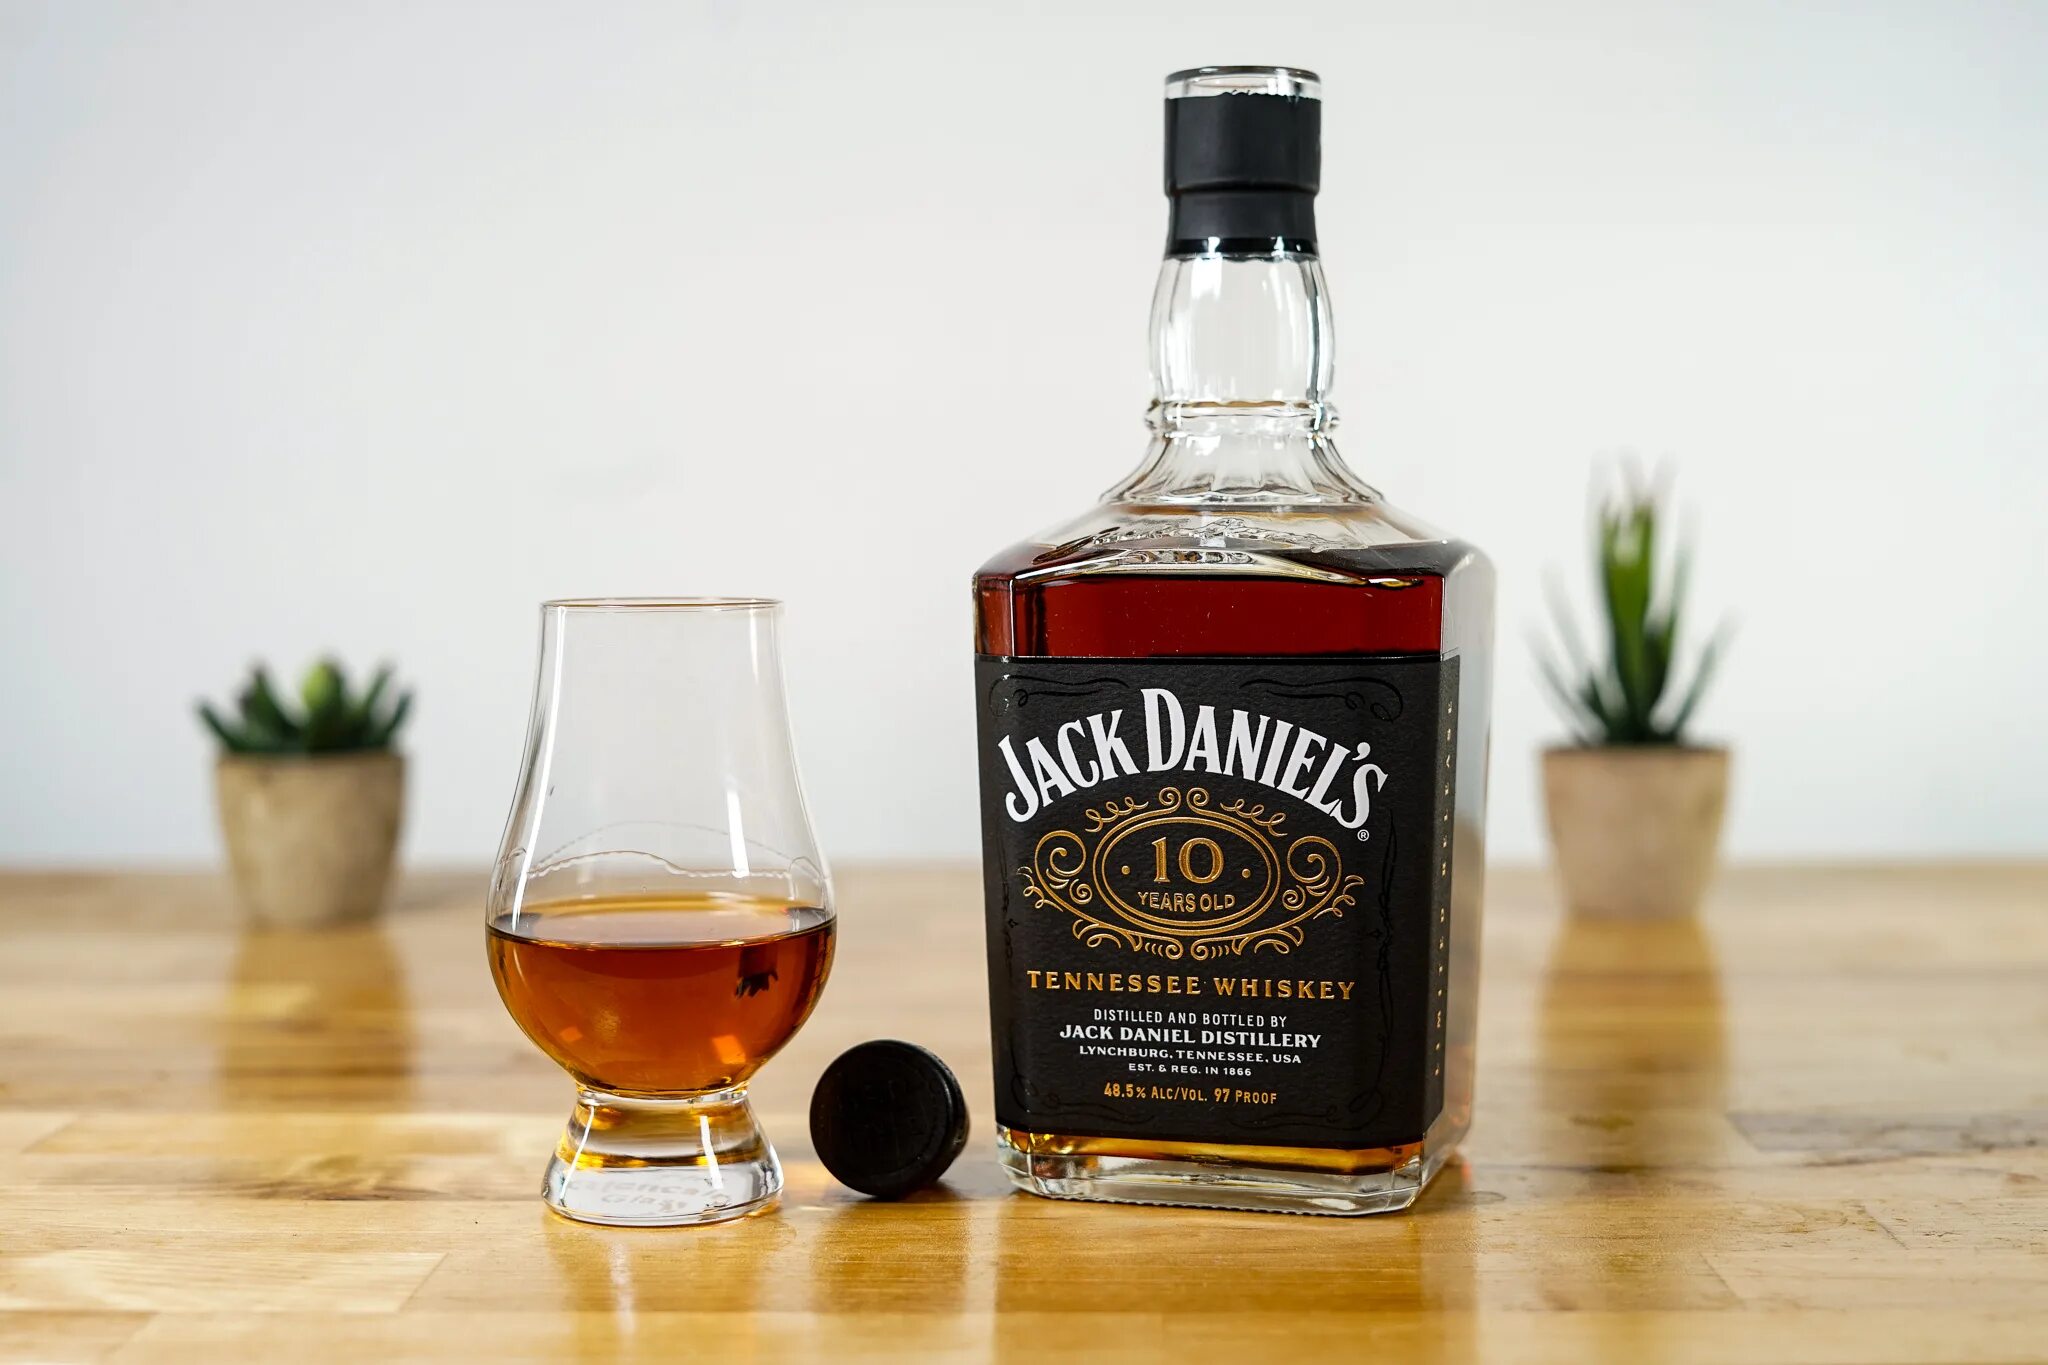 Джек дэниэлс это. Джек Дэниэлс Бурбон. Американские виски Джек Дэниэлс. Виски Джек Дэниэлс Теннесси. Джим Дэниэлс виски.